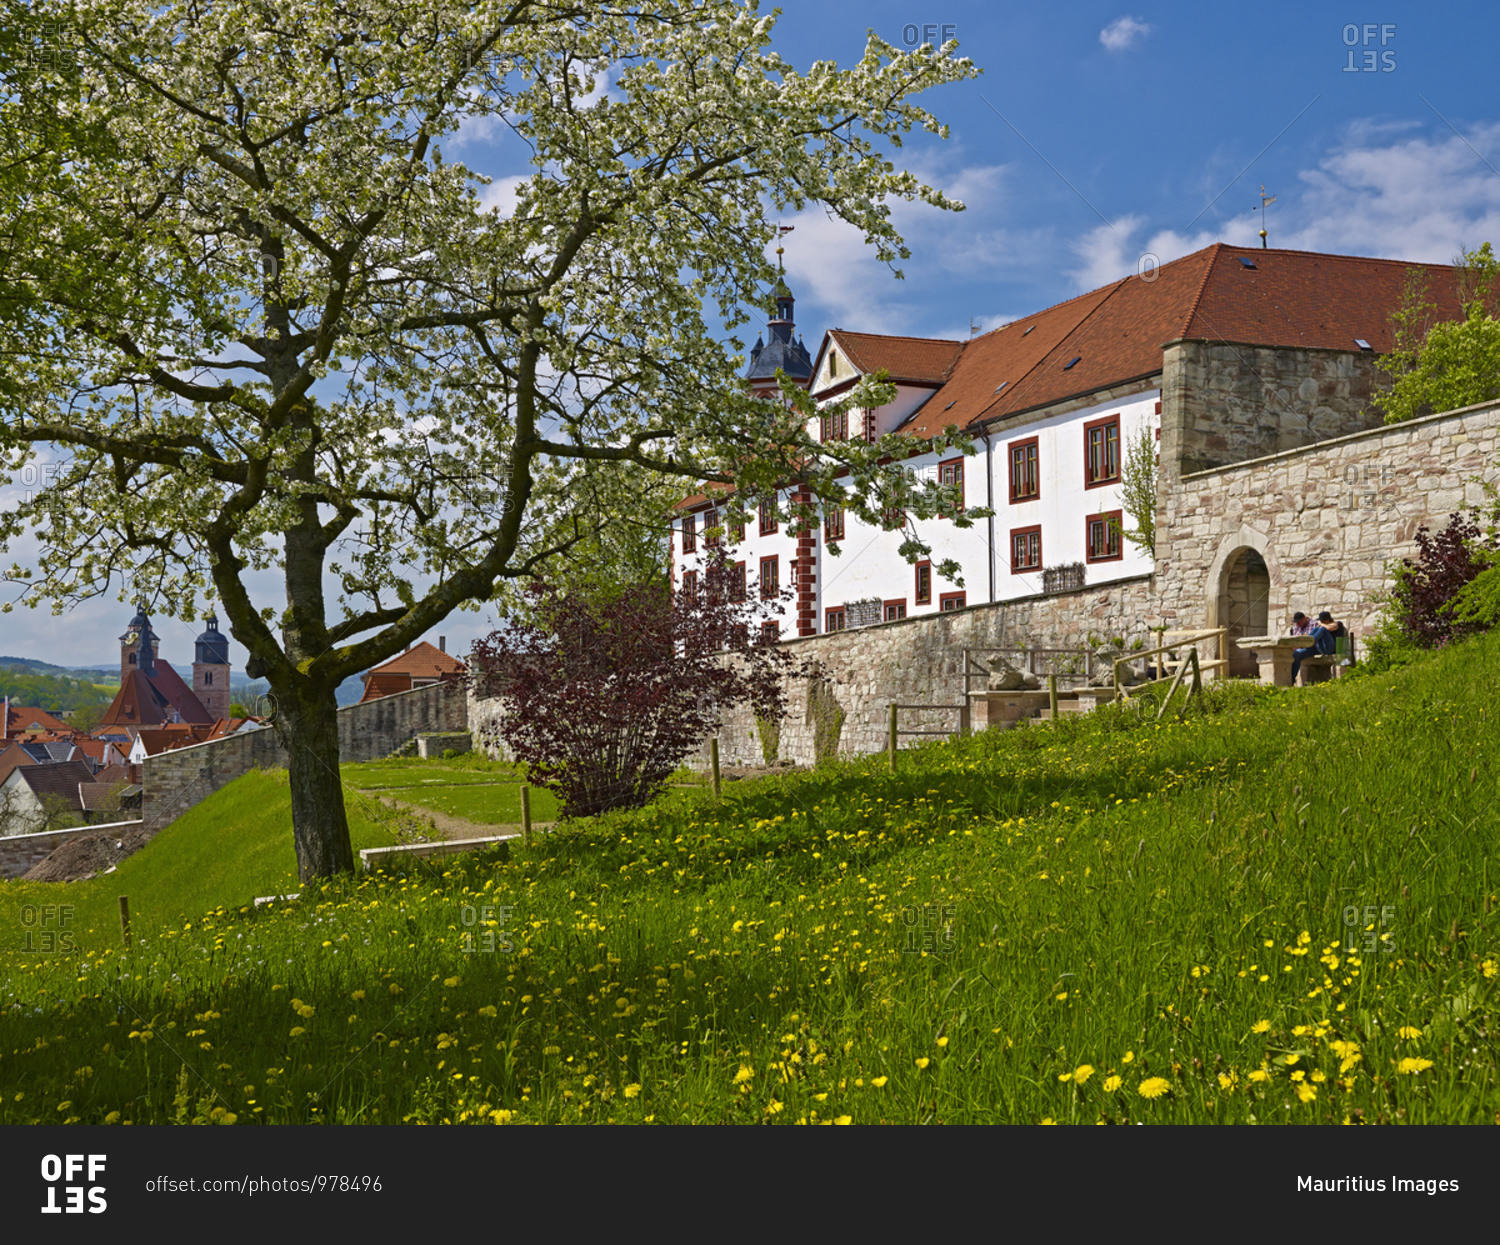 Wilhelmsburg Castle in Schmalkalden, Thuringia, Germany,